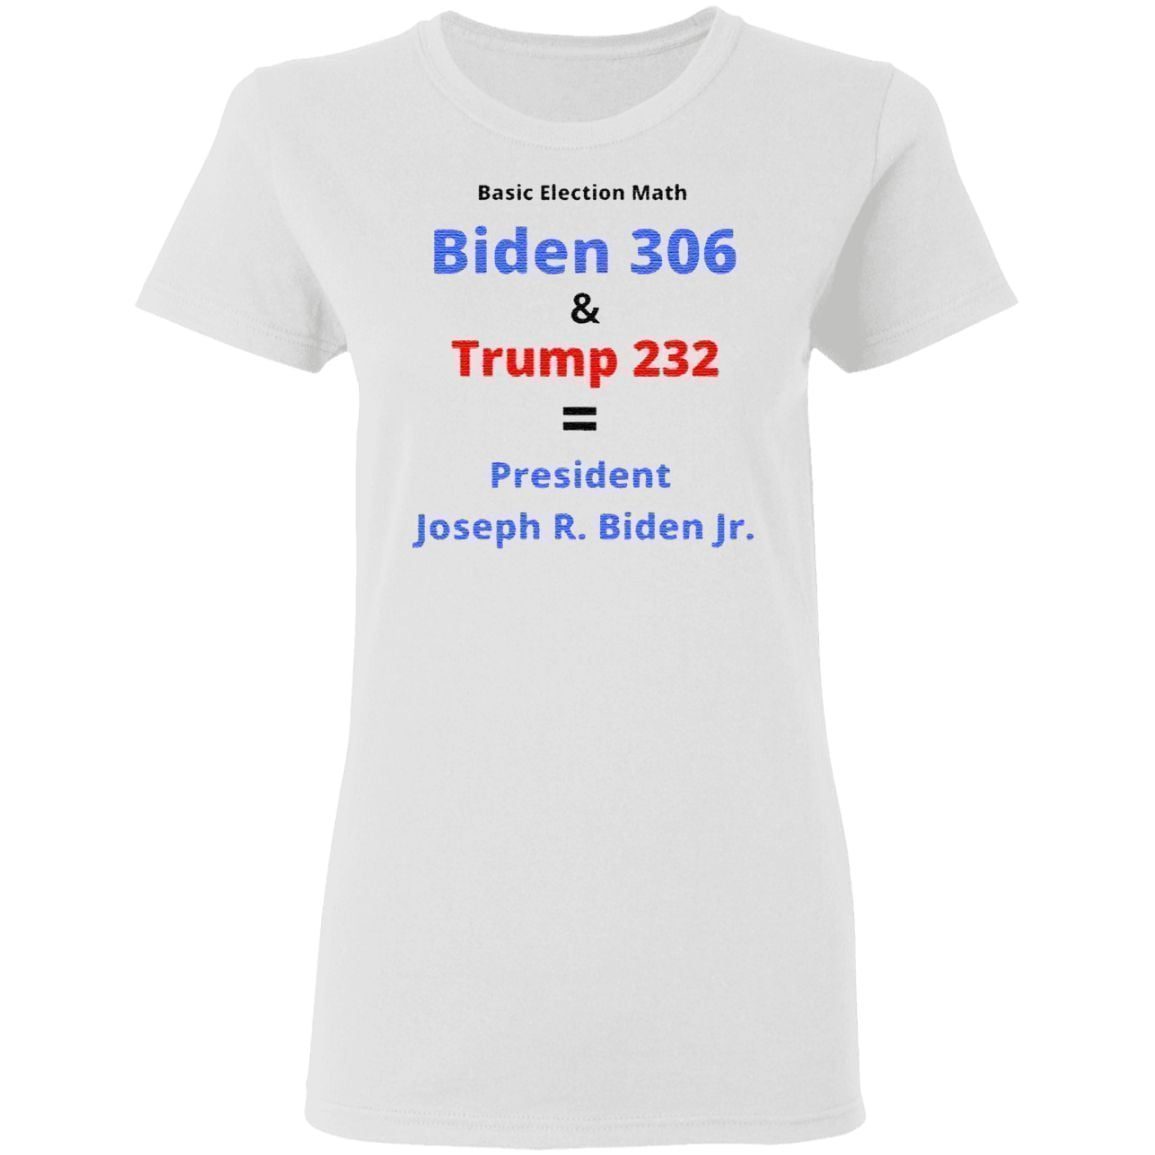 President joseph r. biden jr. 2020 t shirt